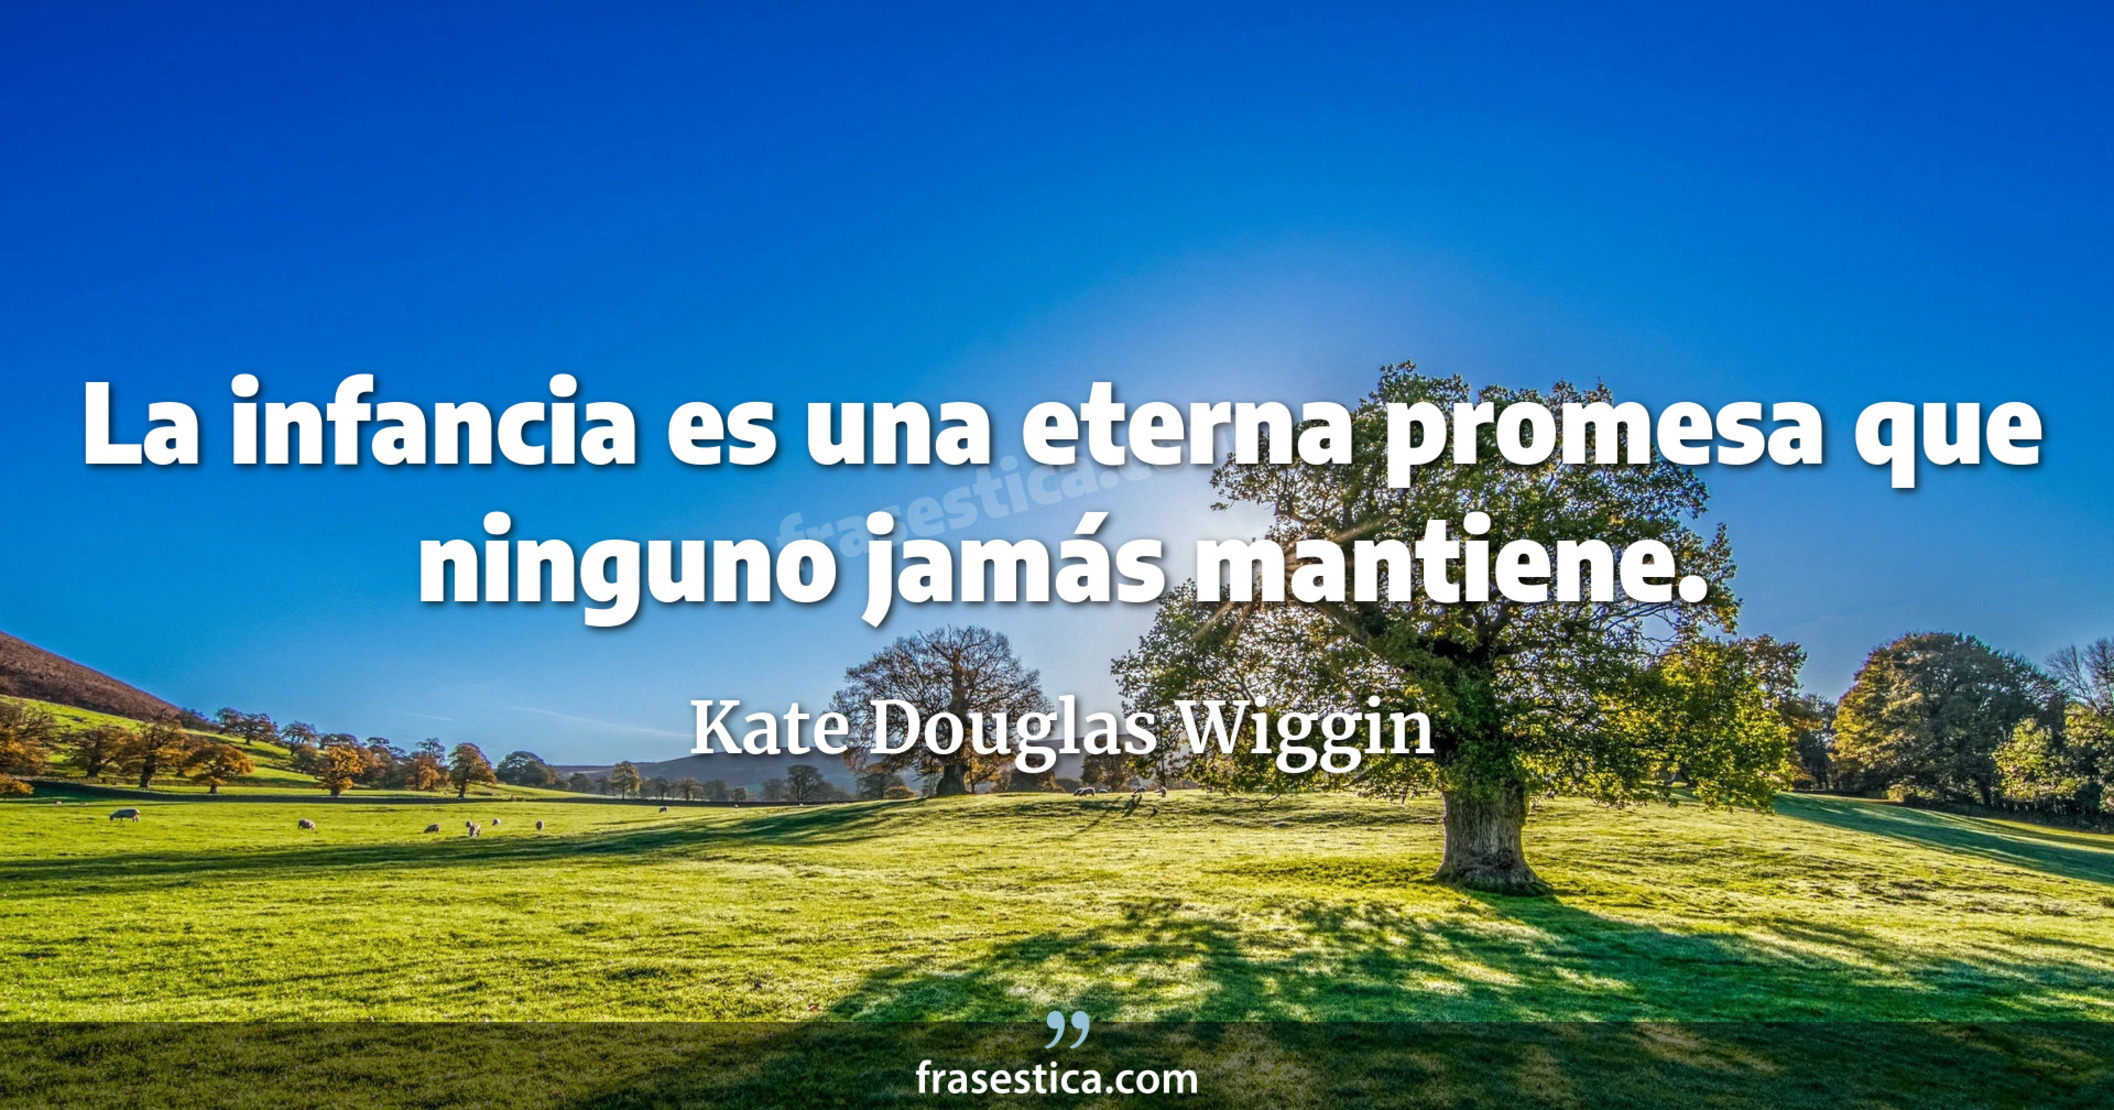 La infancia es una eterna promesa que ninguno jamás mantiene. - Kate Douglas Wiggin